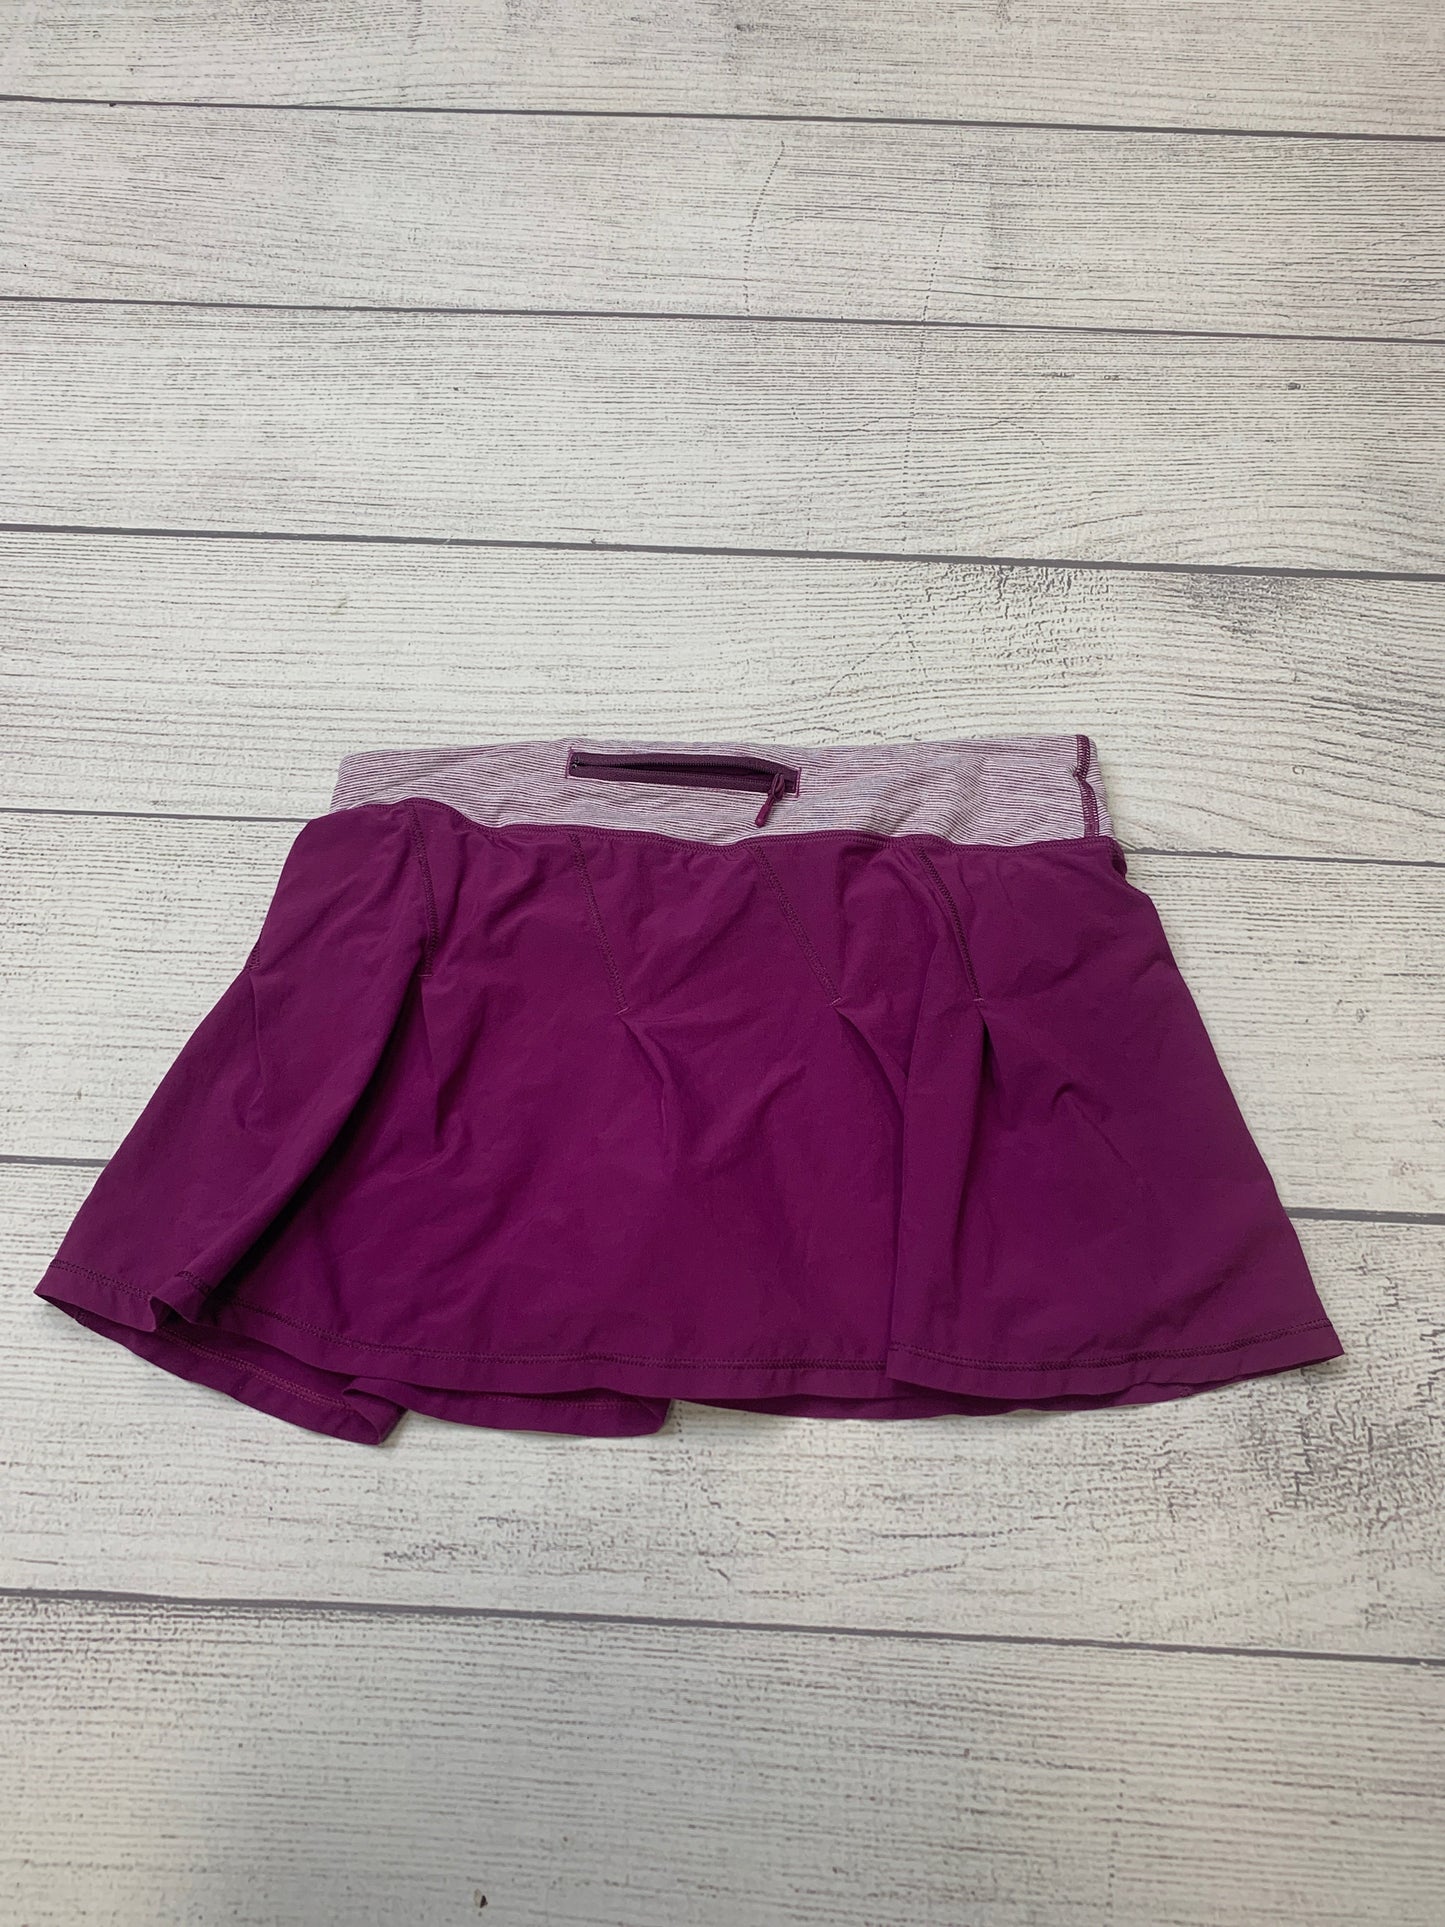 Purple Athletic Skirt Skort Lululemon, Size 6